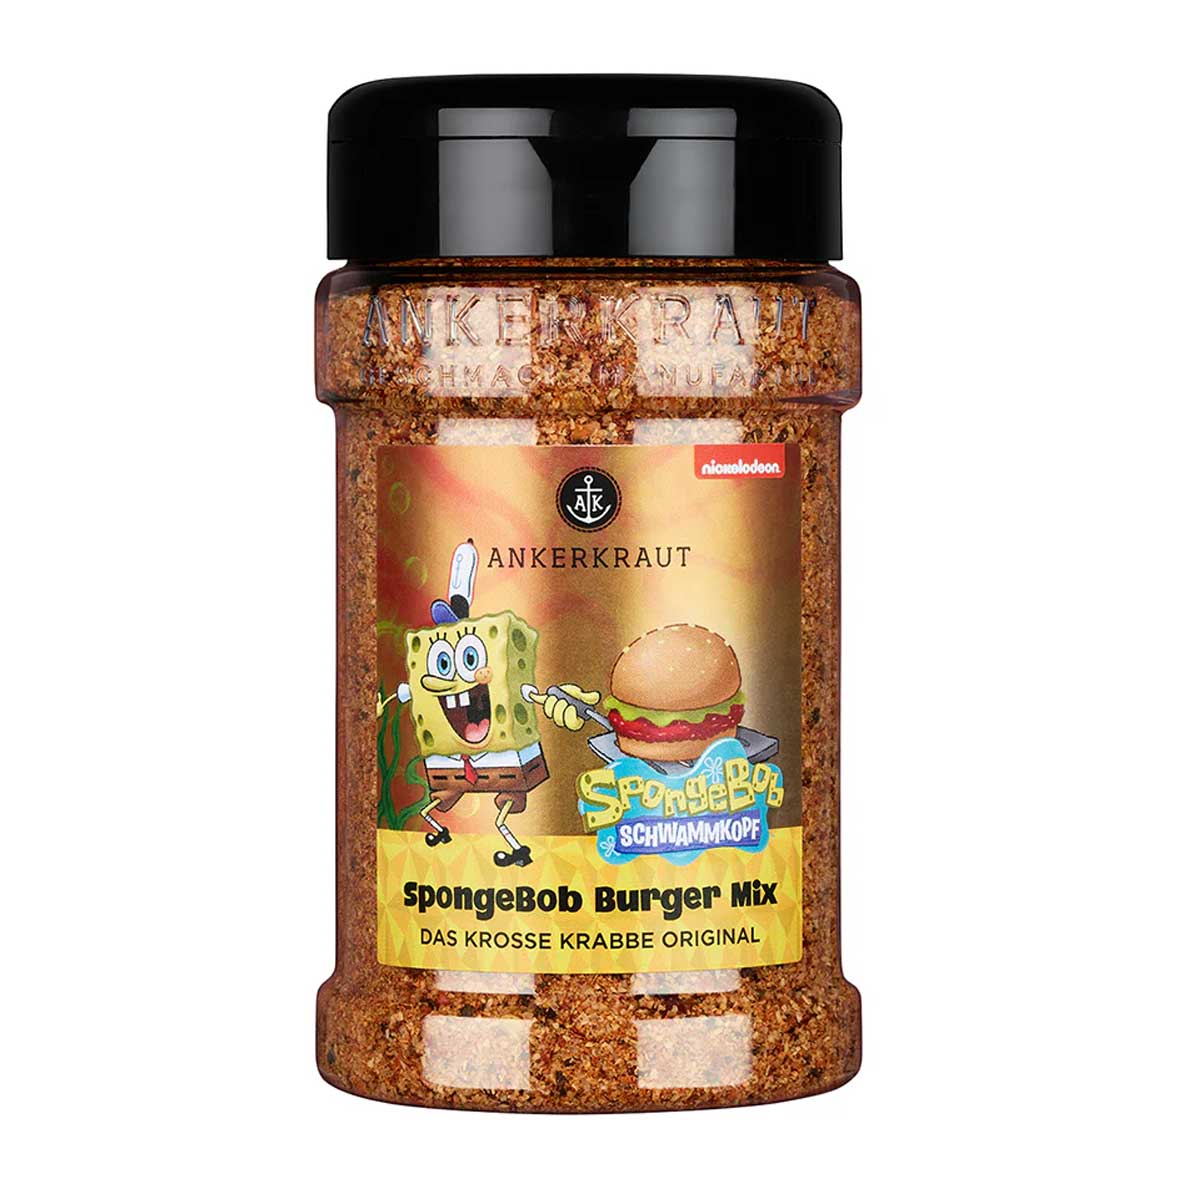 Ankerkraut Spongebob Burger Mix 230g